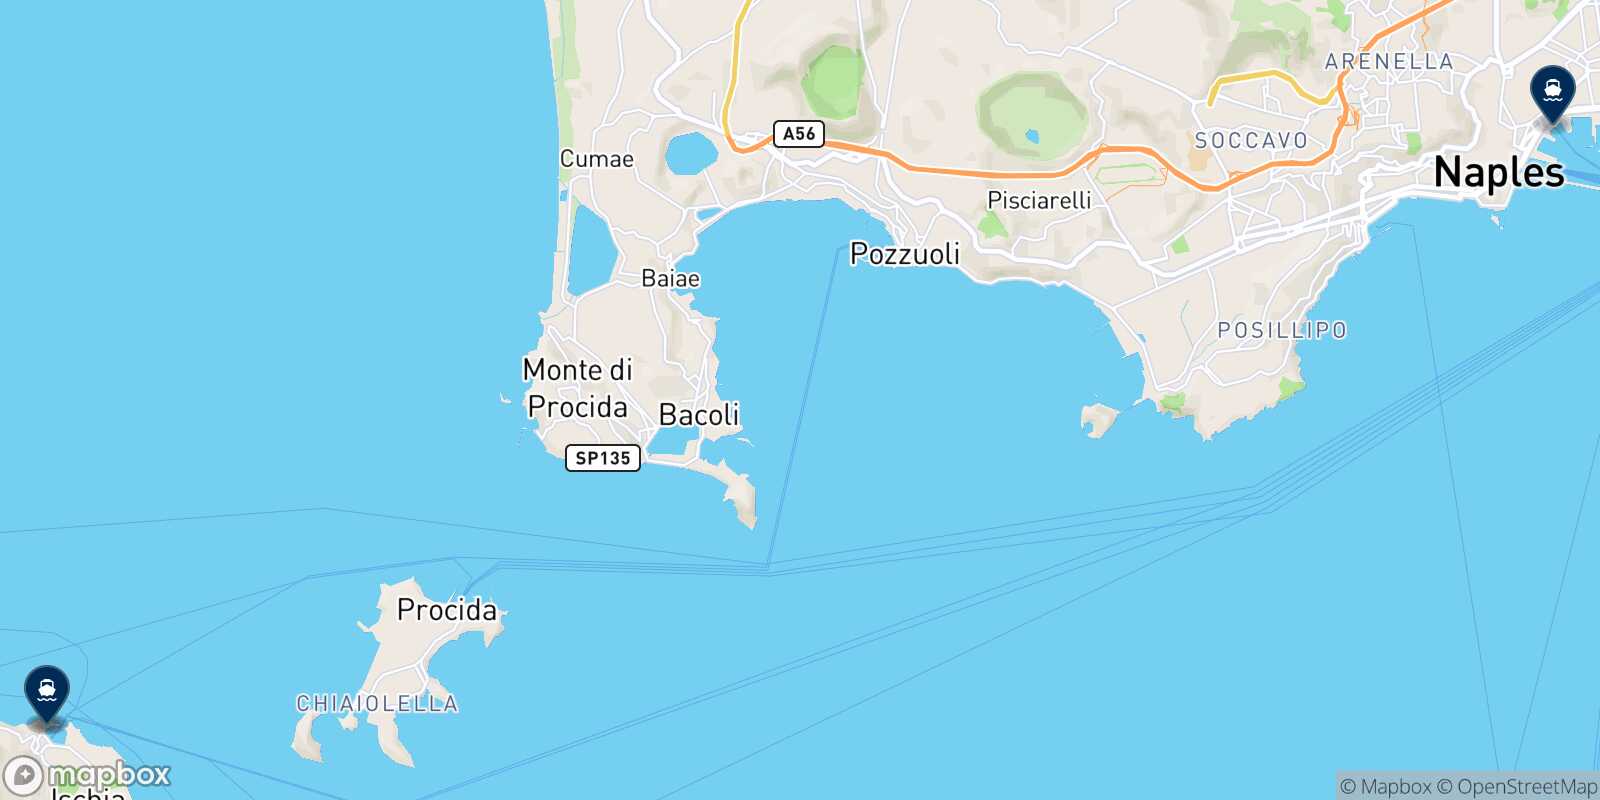 Mappa delle destinazioni raggiungibili da Forio (Ischia)